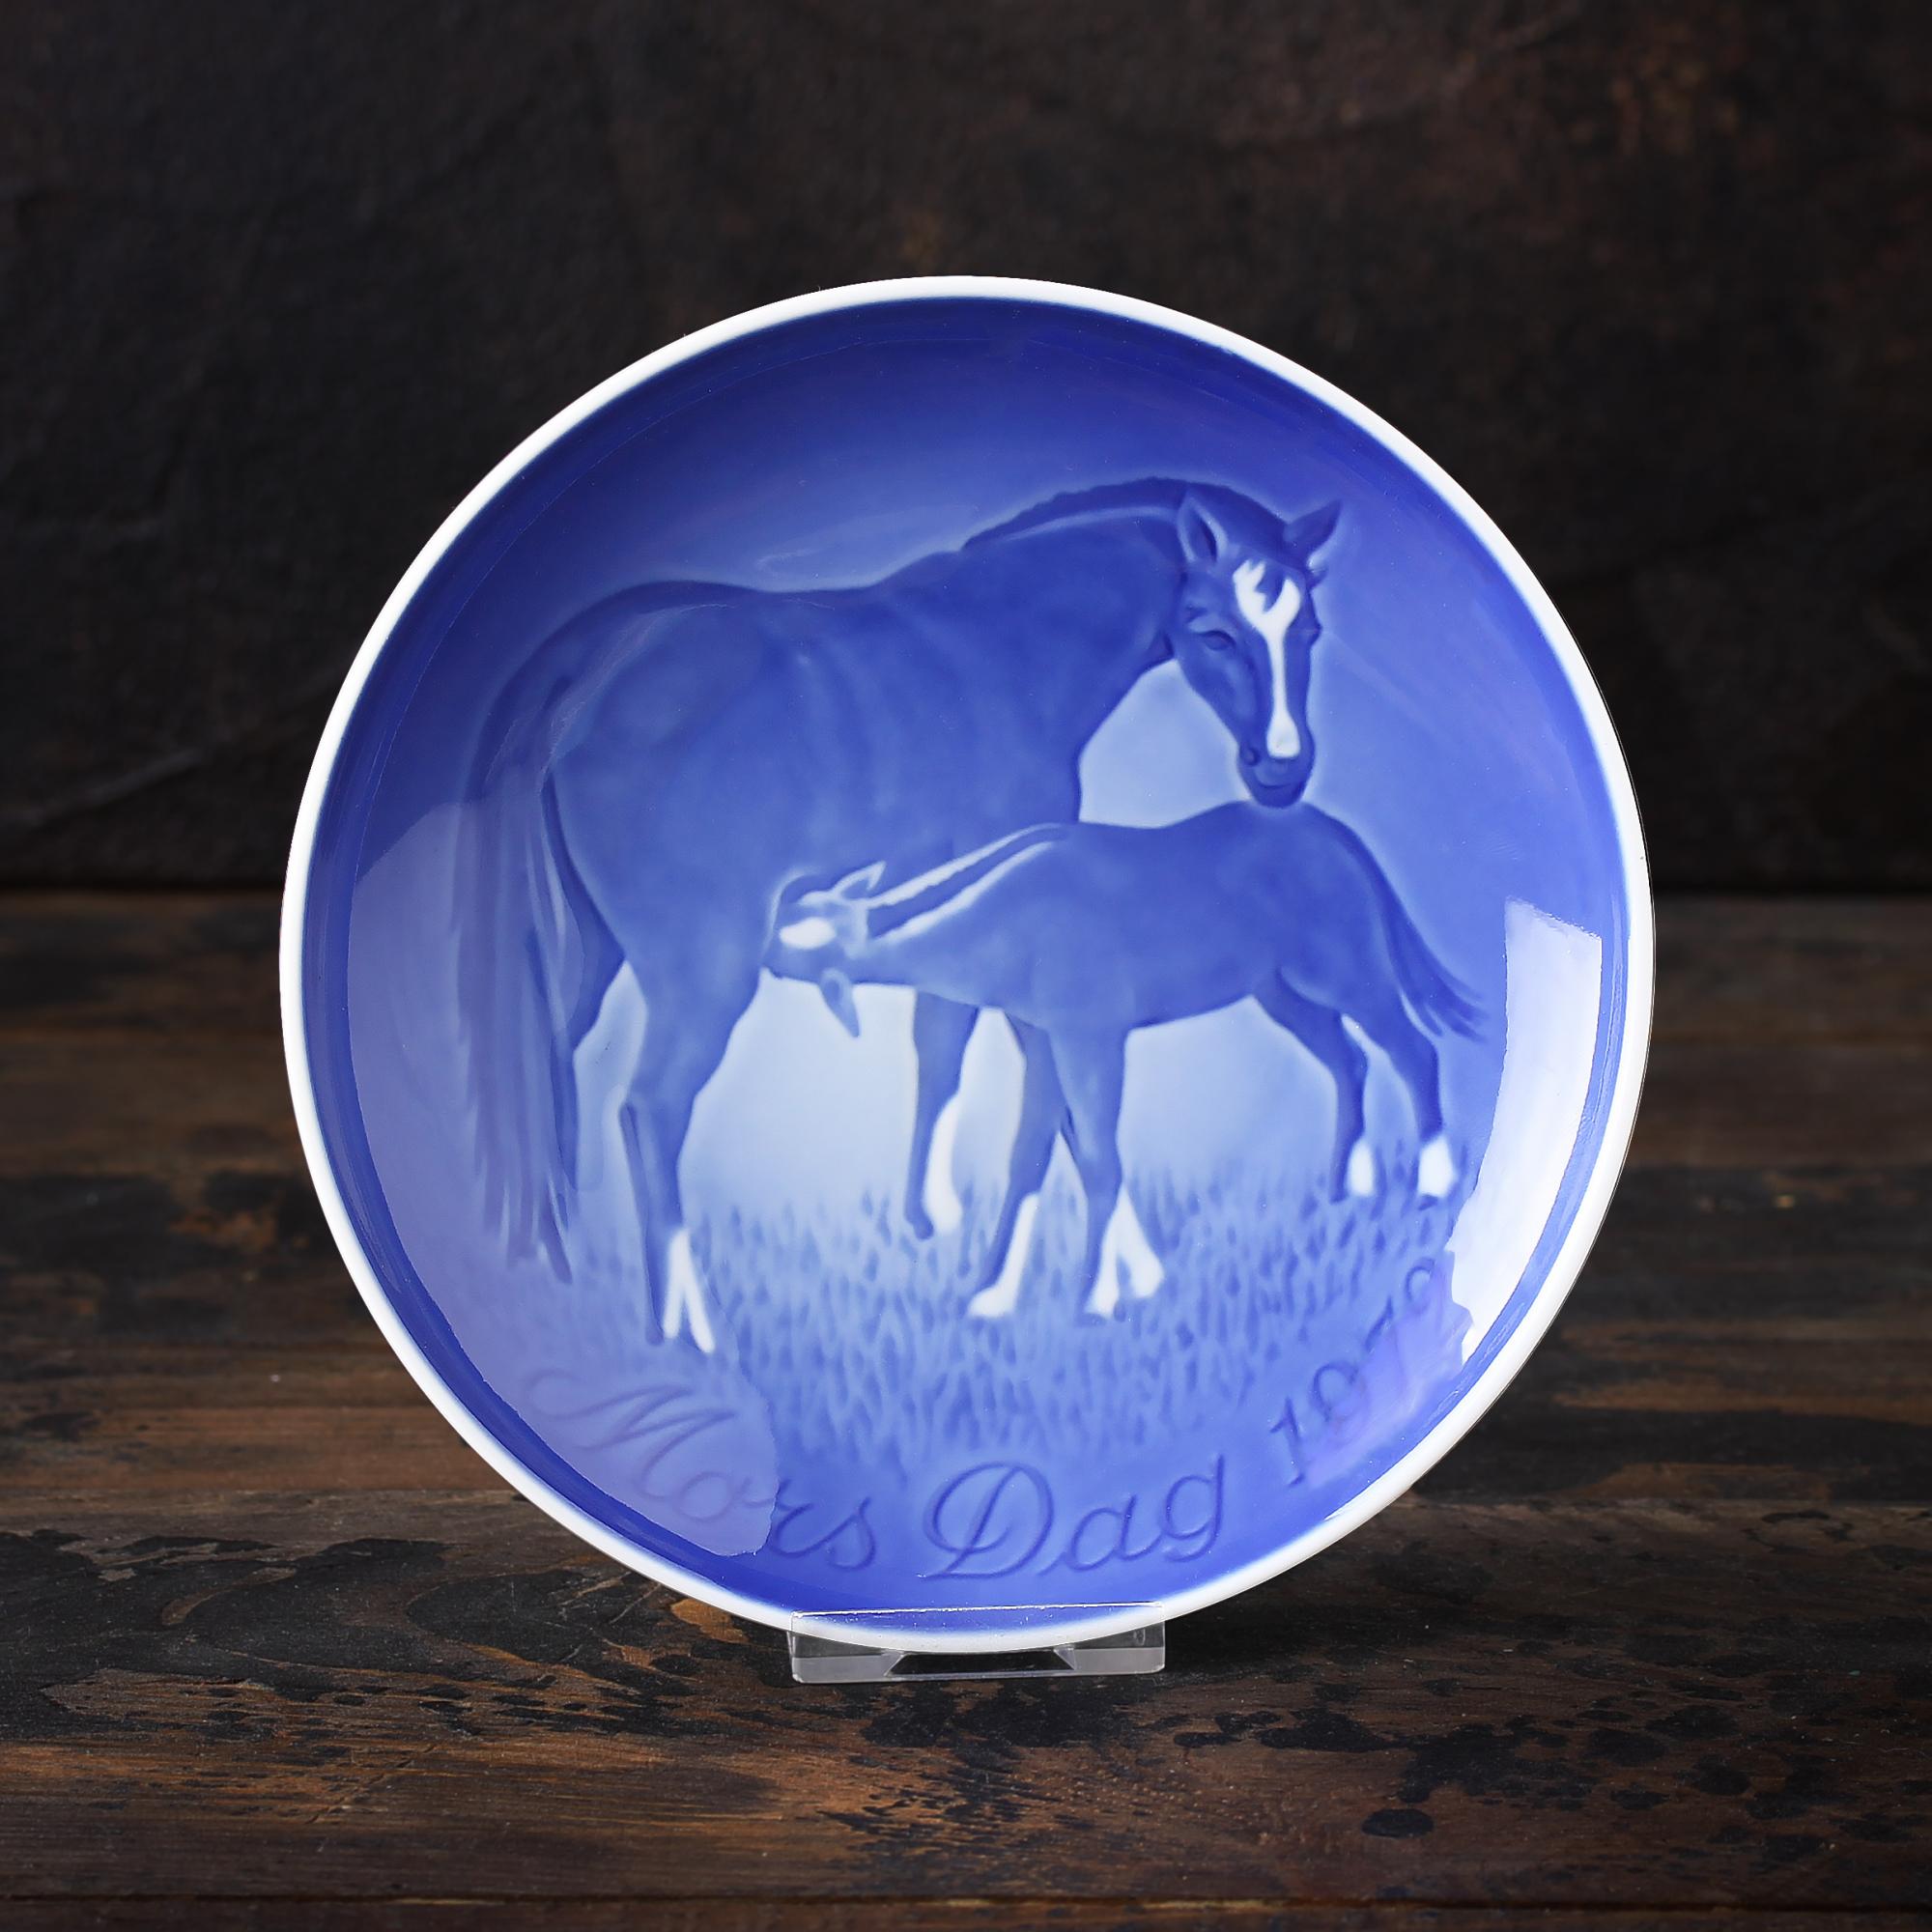 Винтажная декоративная тарелка Bing & Grondahl "Mors Dag 1972" День матери / Лошадь с жеребёнком